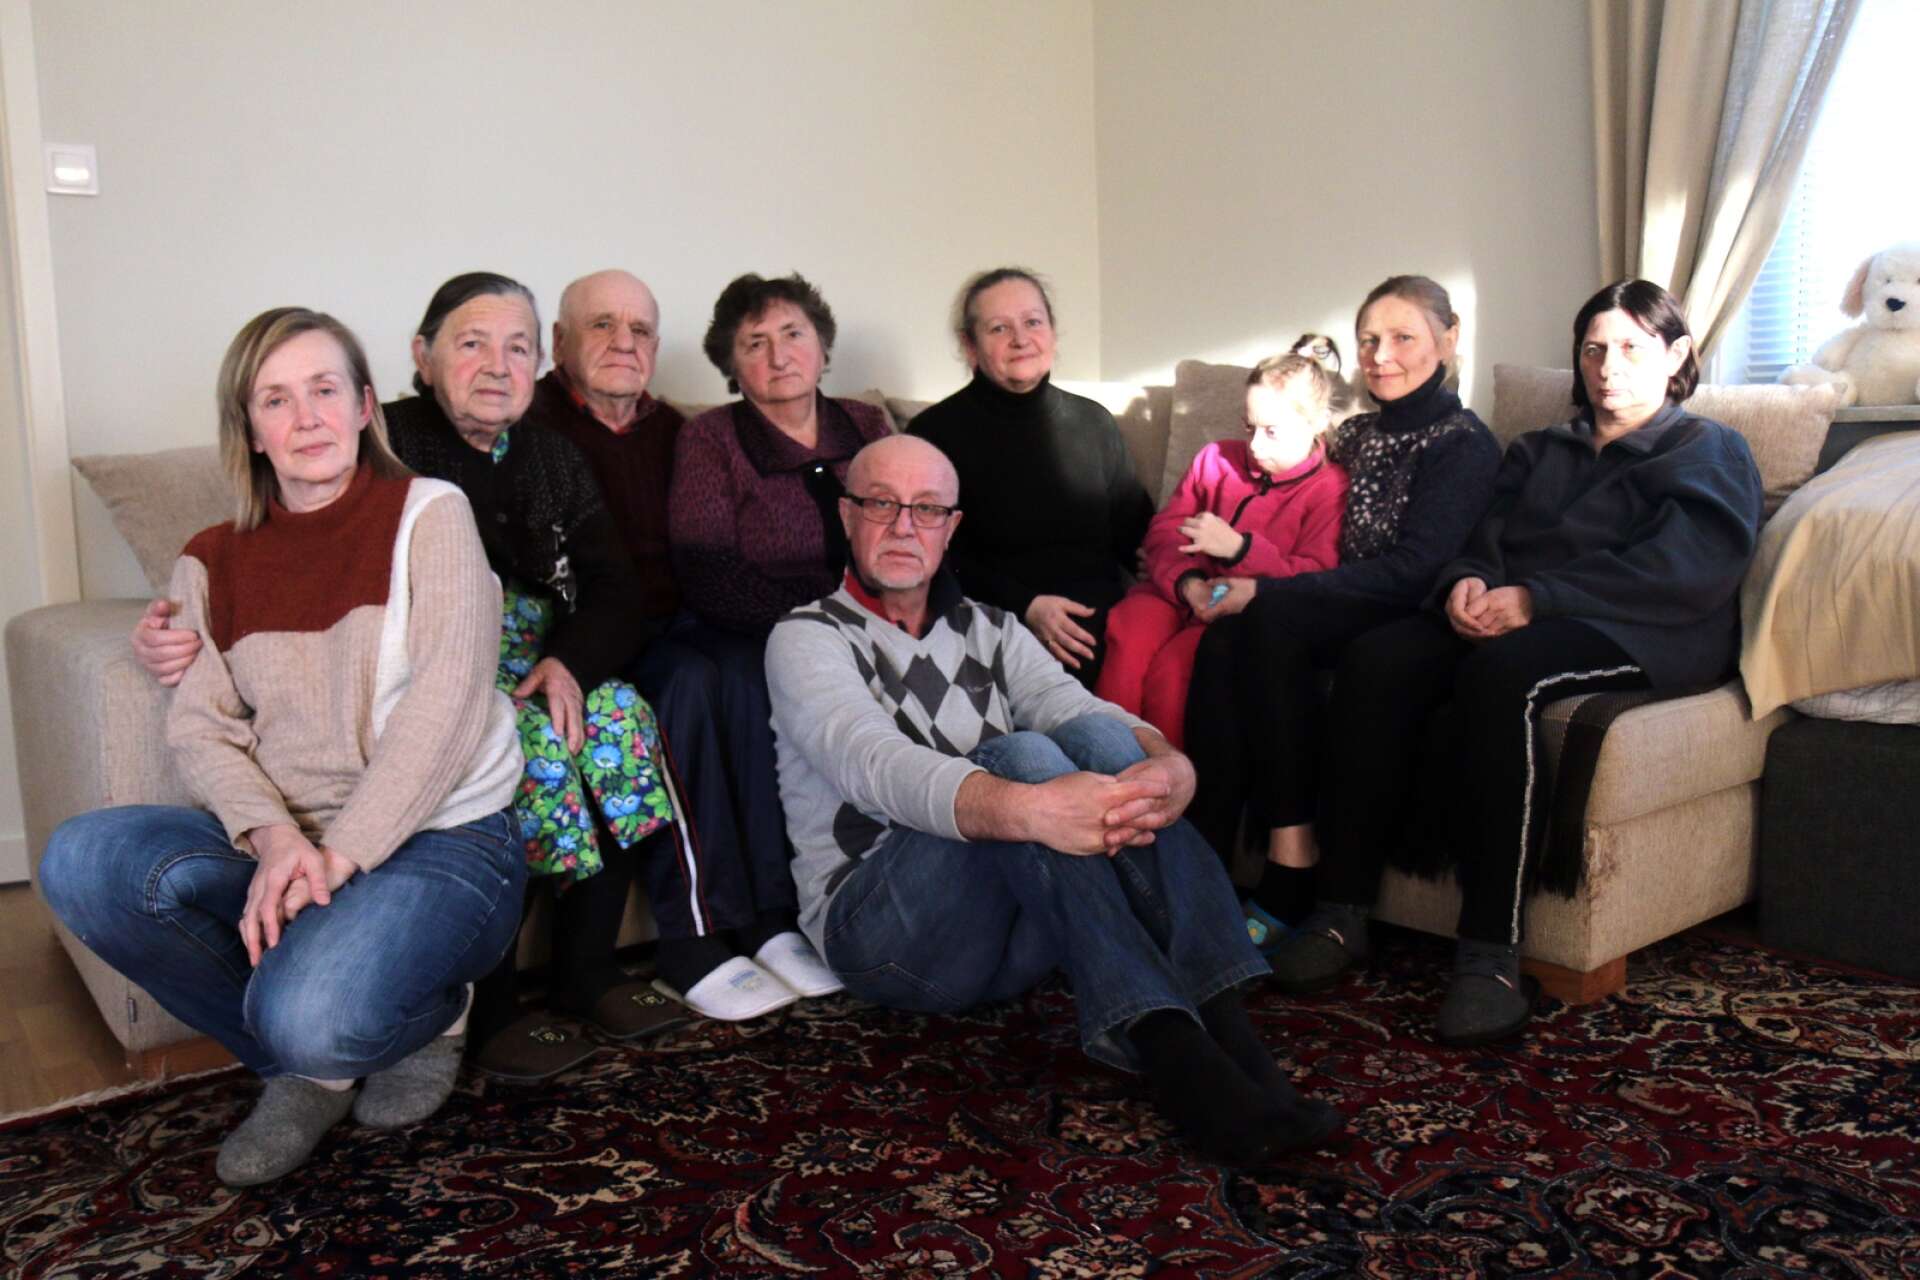 Igor Yarotsky sittandes i mitten med frun Larisa Yarotskaya längst till vänster, hemma i Hjo, med flyktingarna från vänster: Bronislava Pashkovich, Vladmir Kotziuba, Lydmila Kotziuba, Larisa Kotziuba, Julia Kalenskaya och Lydmila Korzik. 